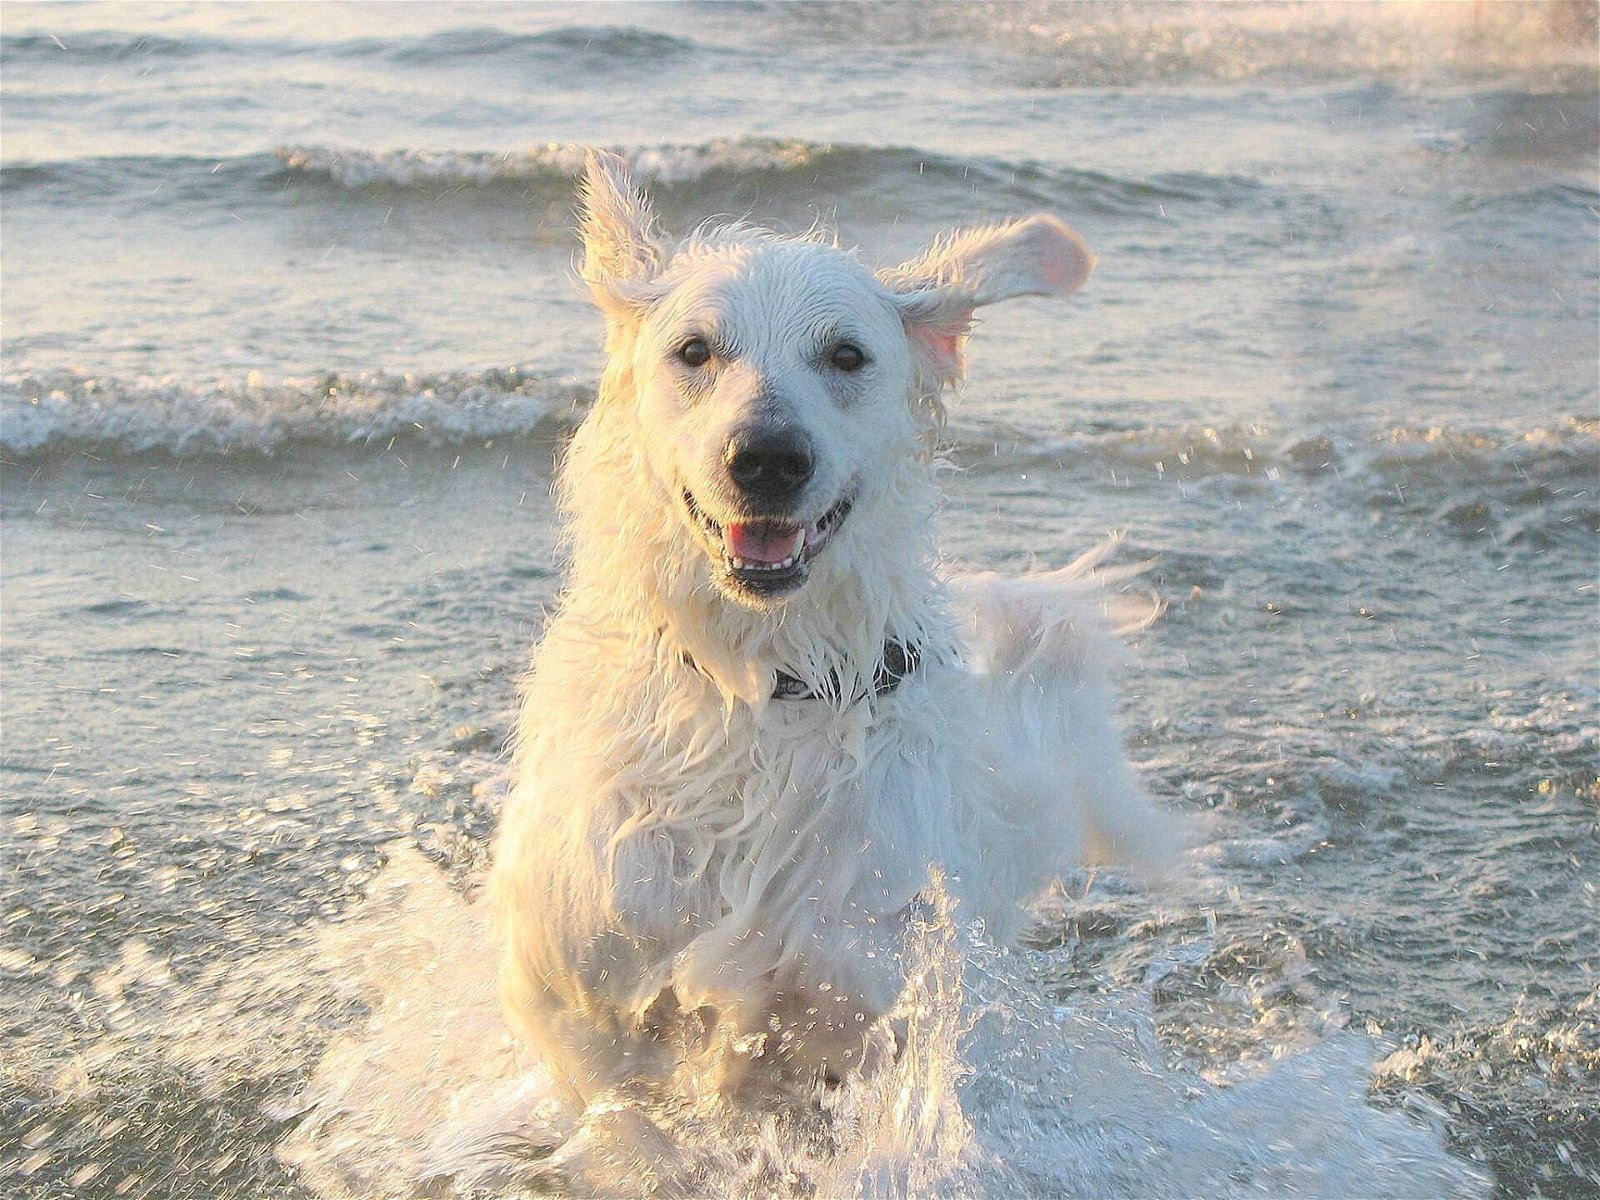 Baden Salzwasser - Hund läuft durchs Meer